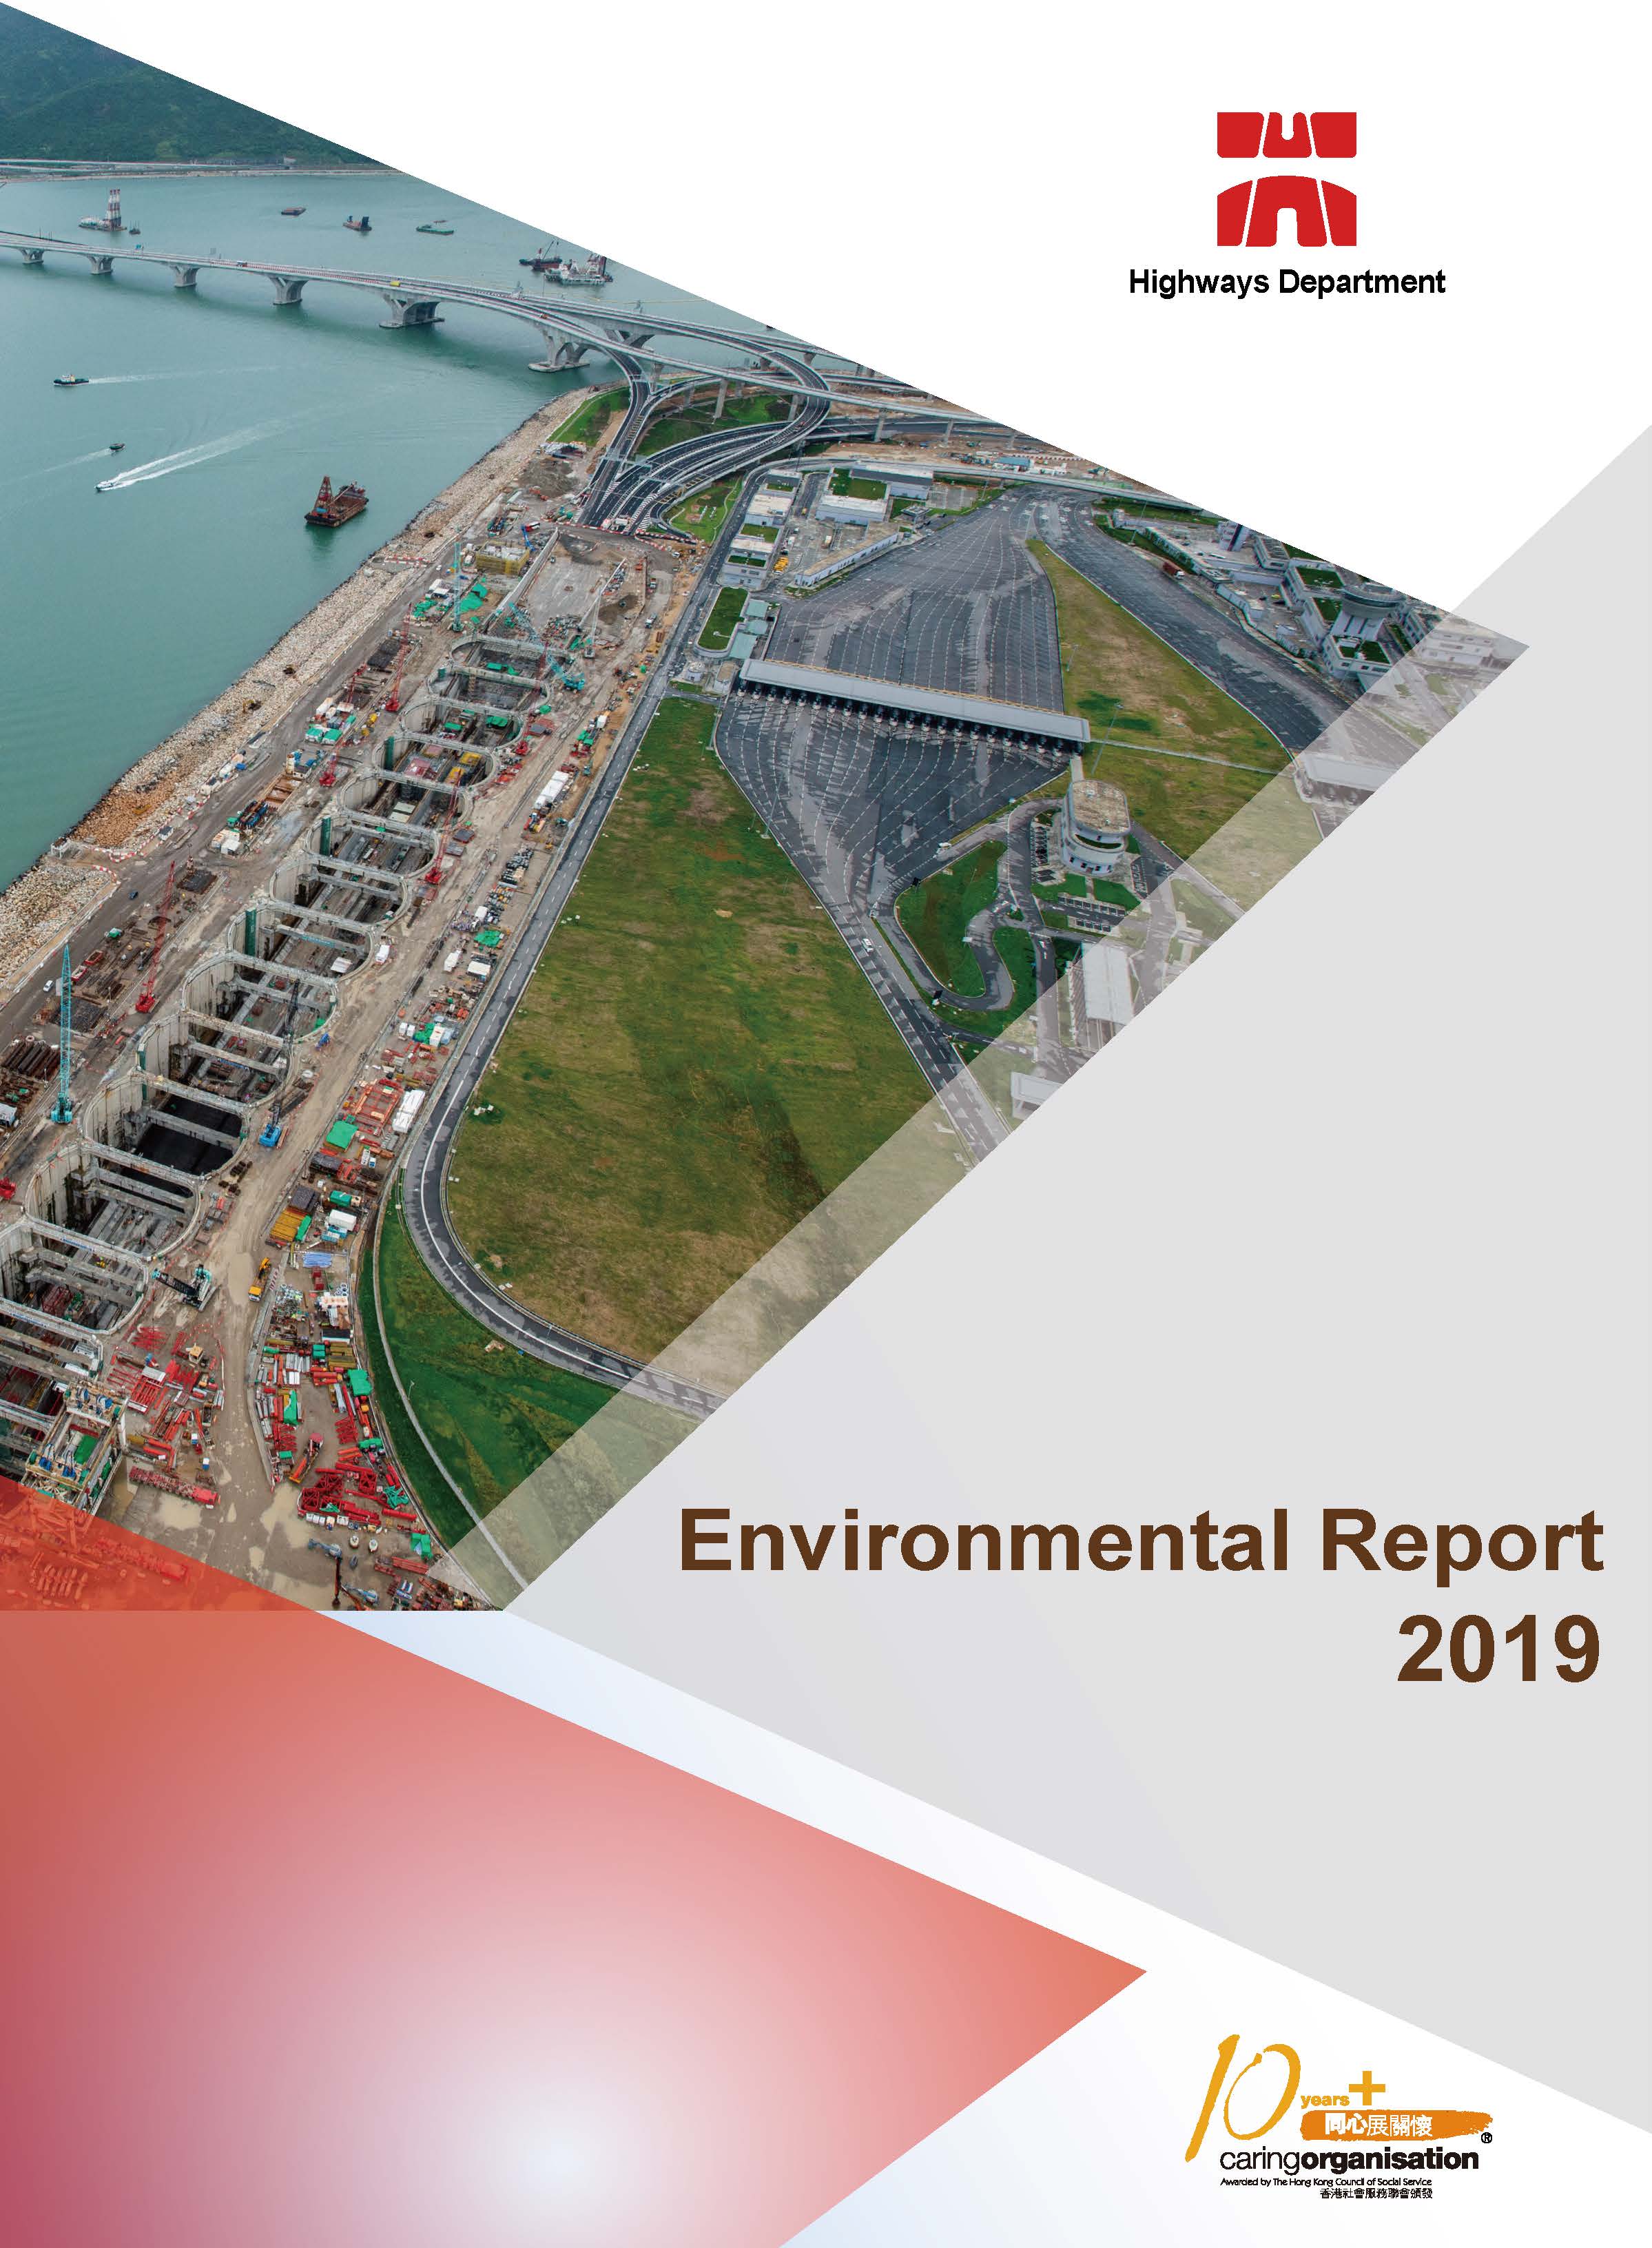 Environmental Report 2019